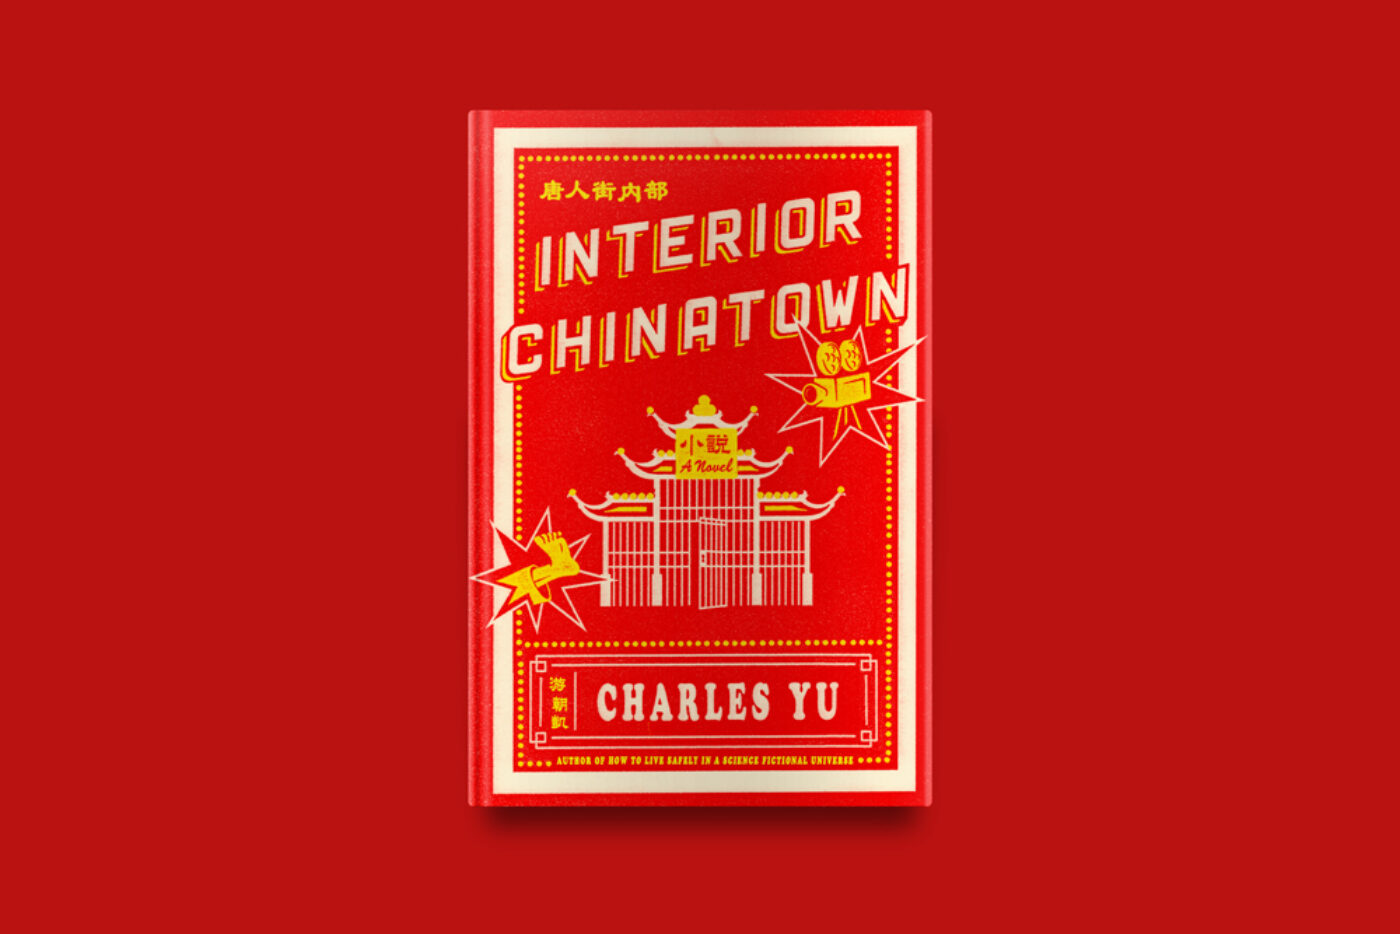 interior chinatown charles yu